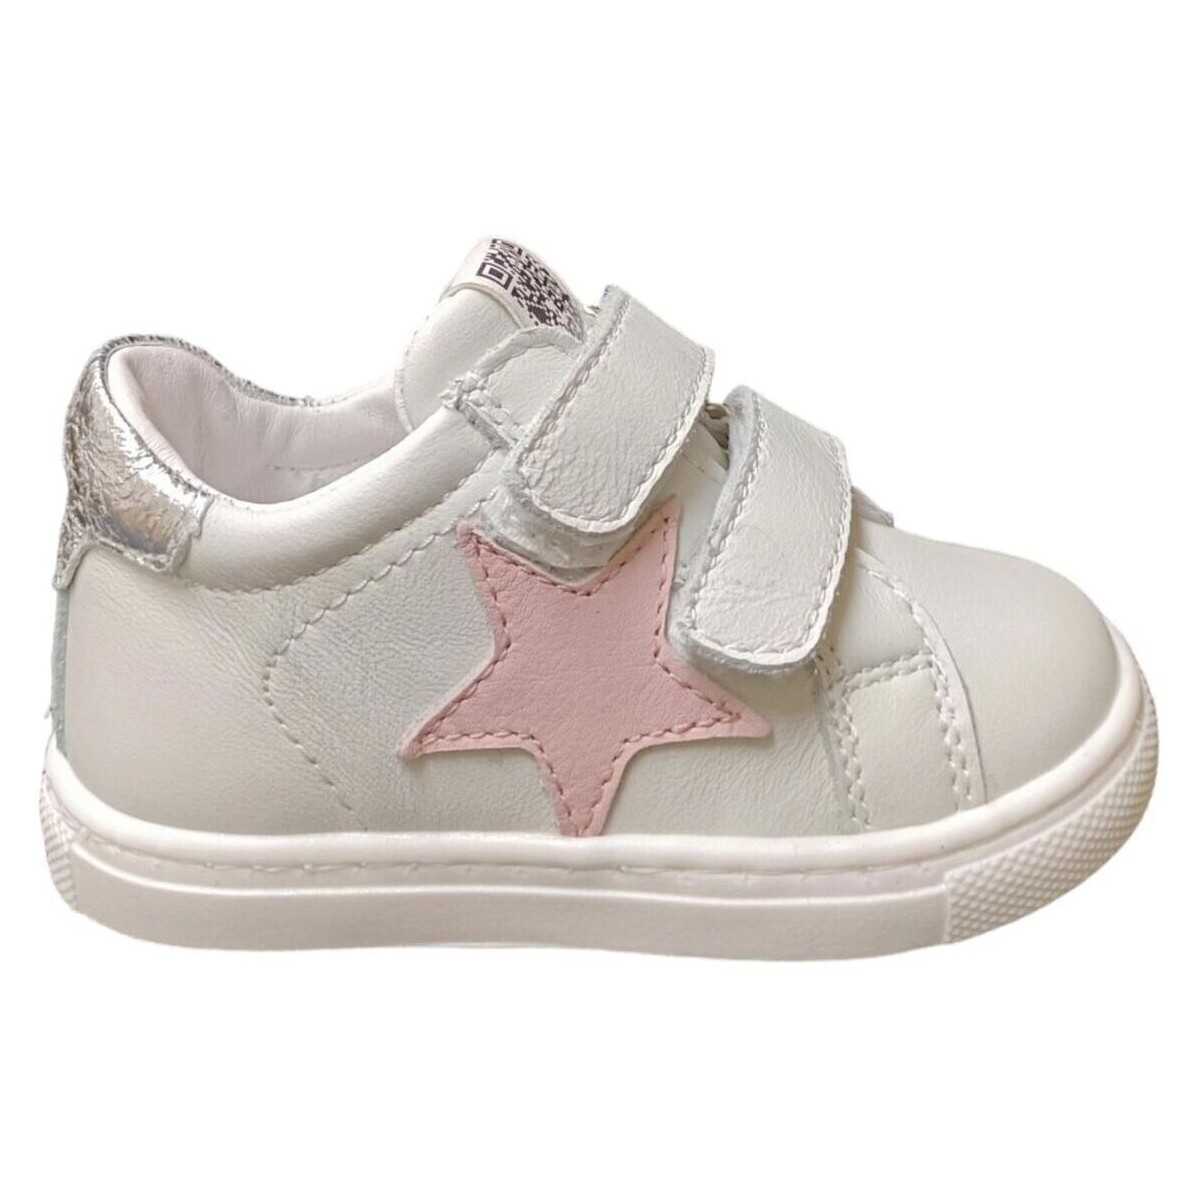 Sapatos Criança Sapatilhas Ciao STAR BABY Multicolor